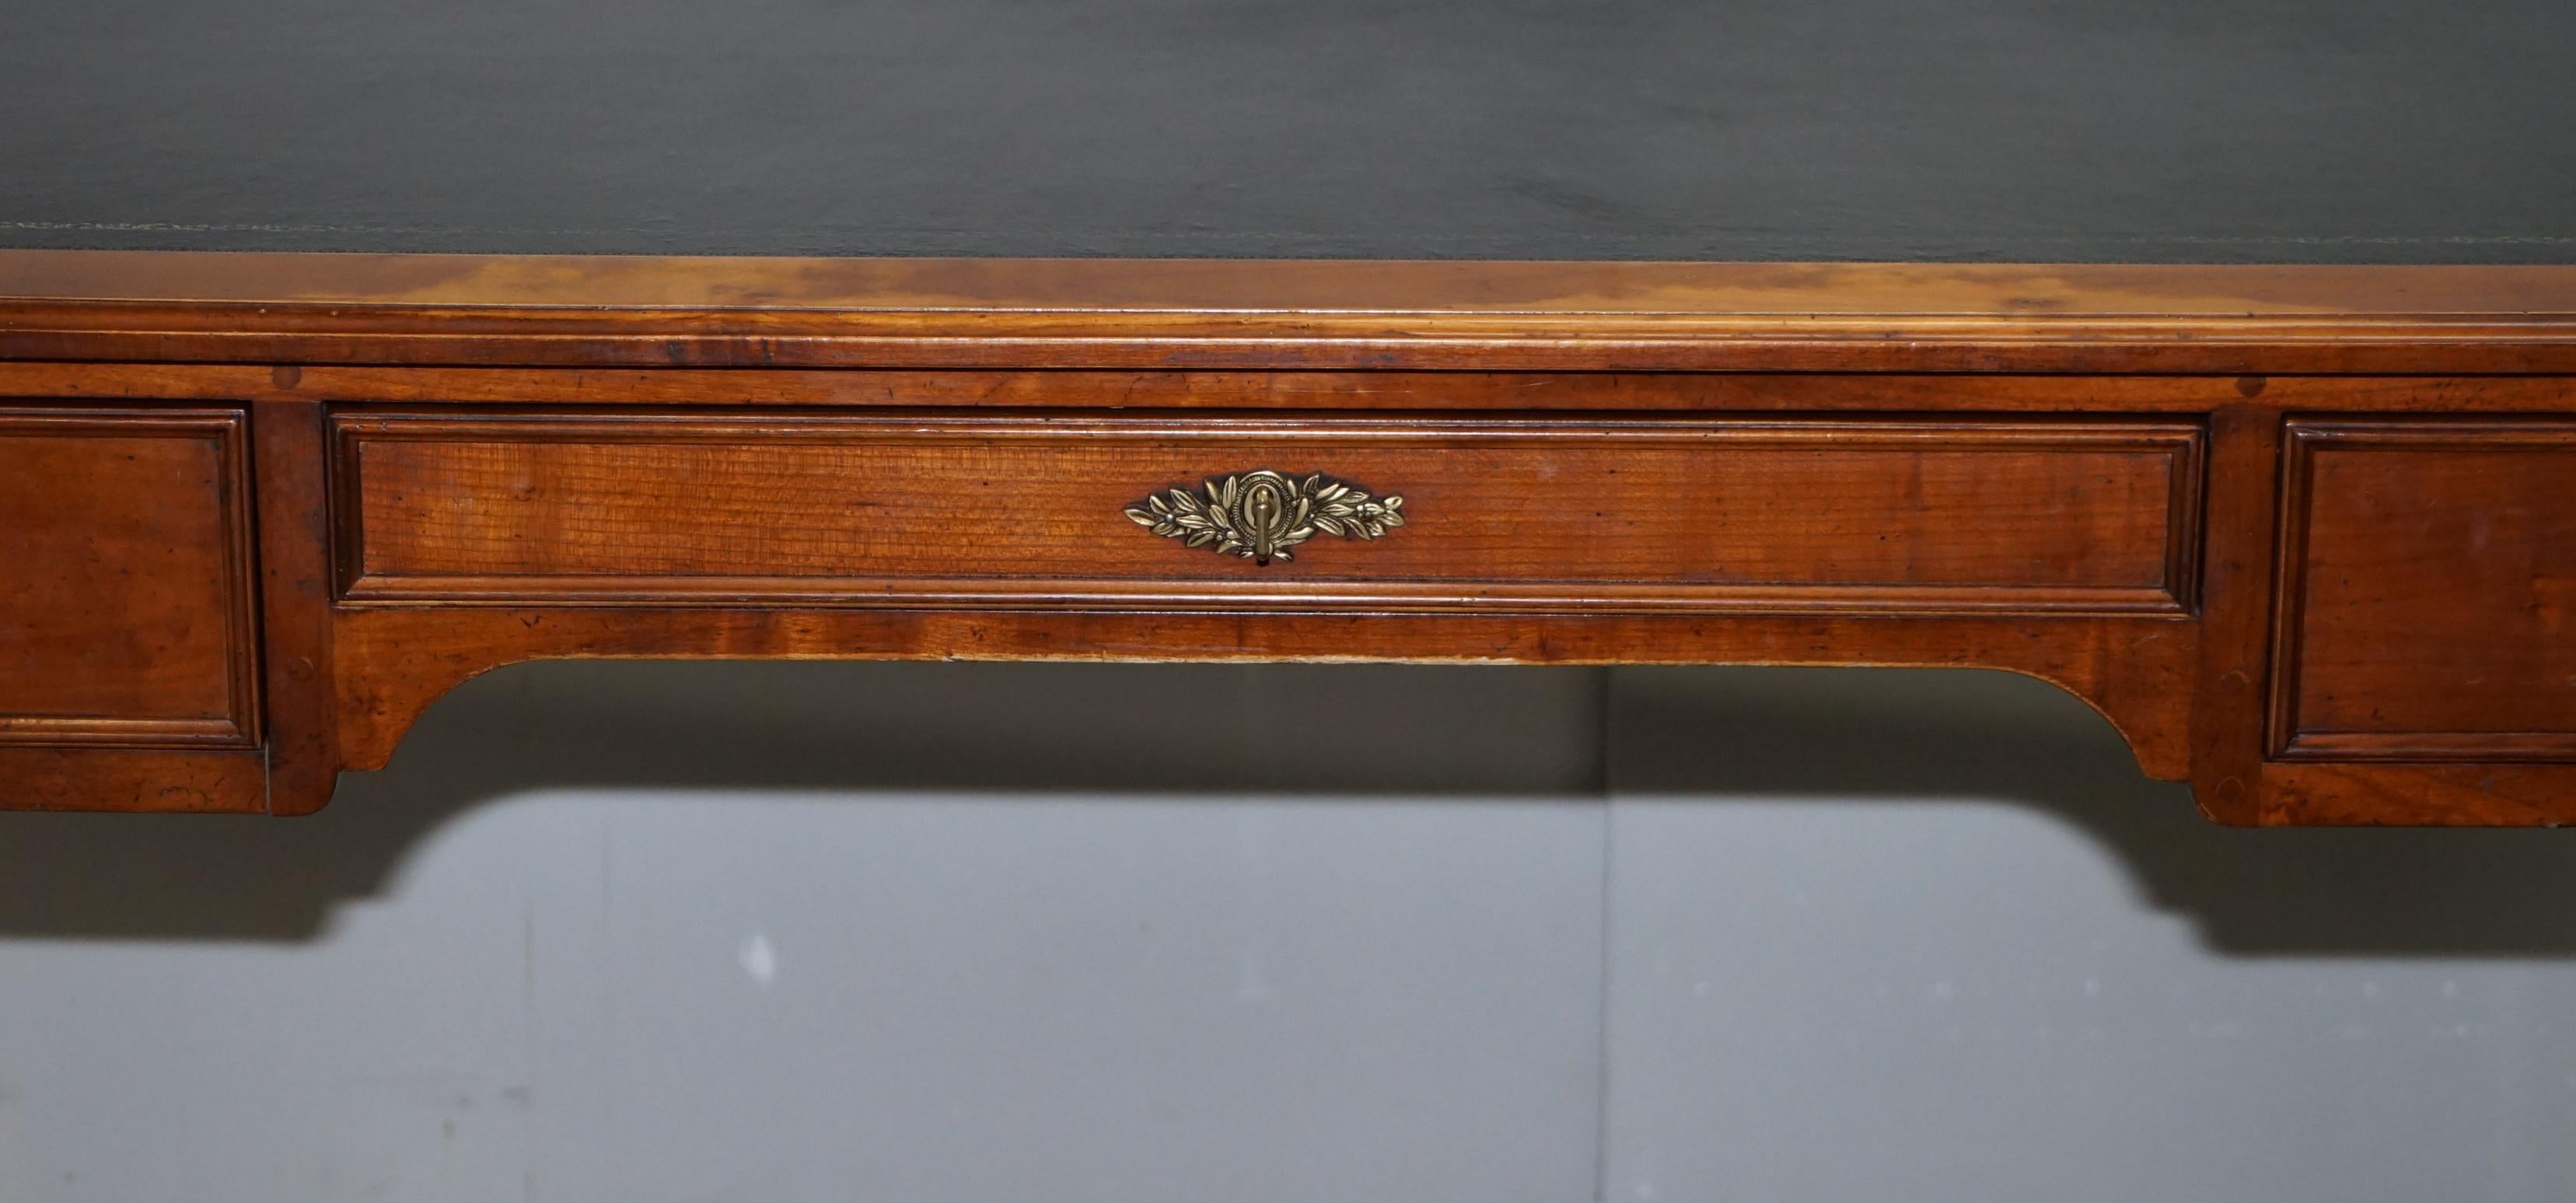 Vintage Fruitwood Leather Topped Extending Bureau De Plat Desk Writing Table 4